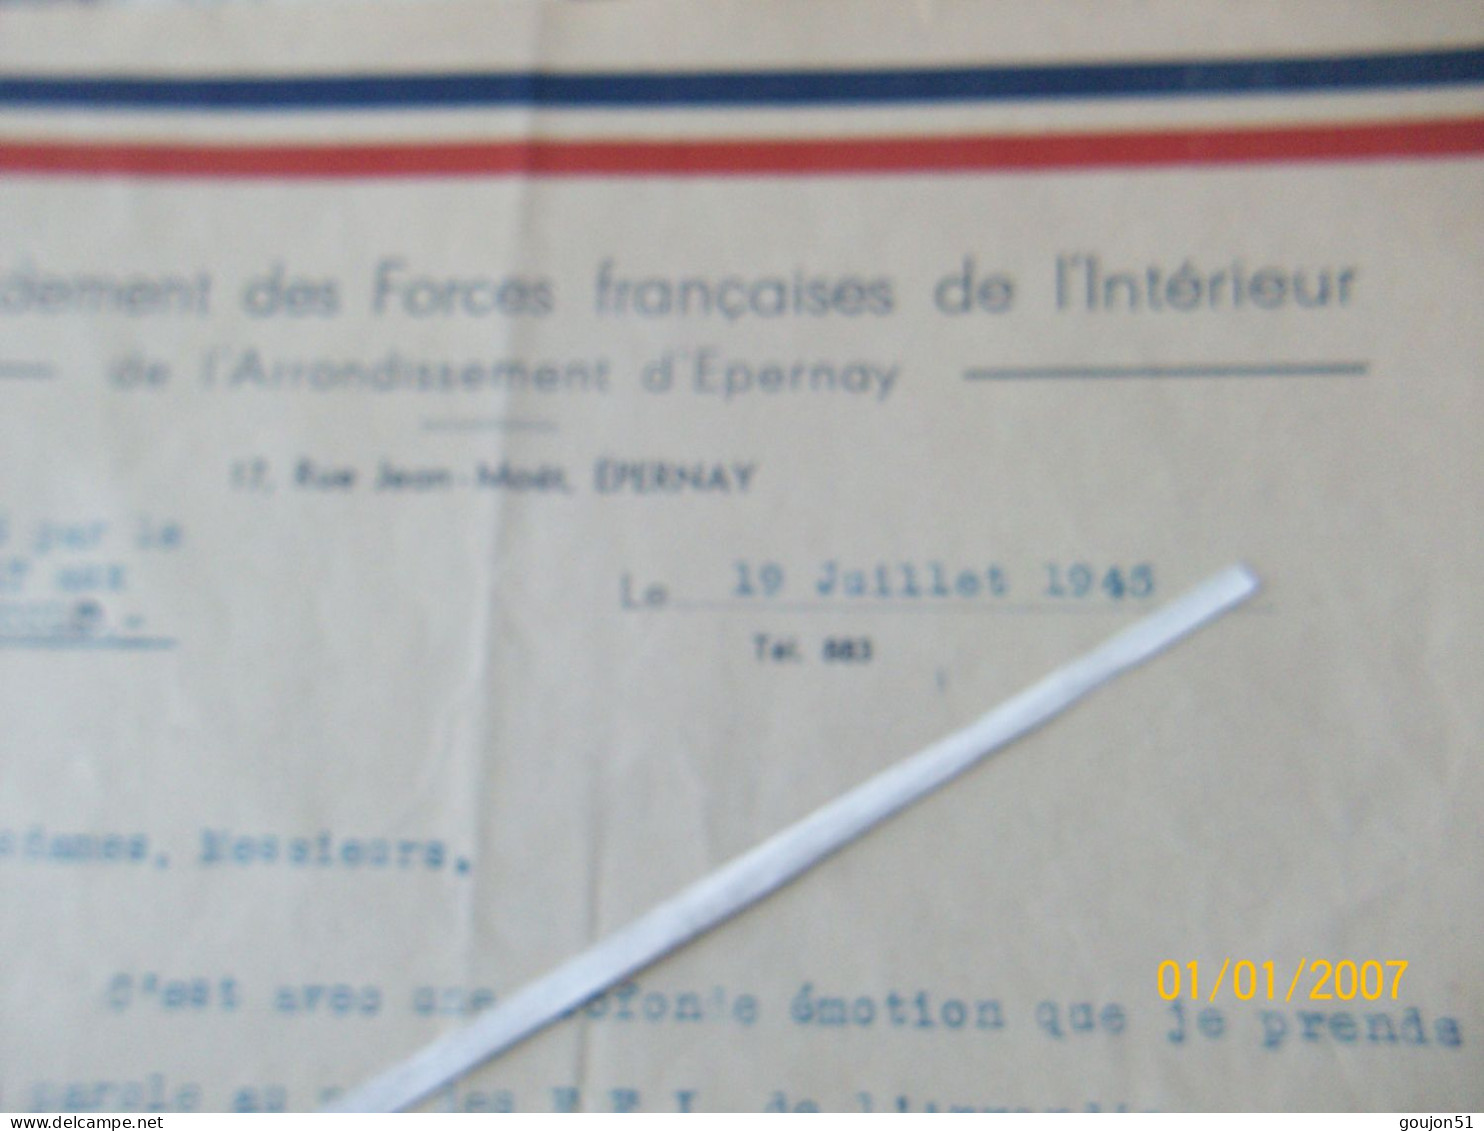 Lettre Commandement Des Forces Française De L' Intérieur De L'Arrondissement D'Epernay Discours Prononcé Par Le Capitain - Dokumente